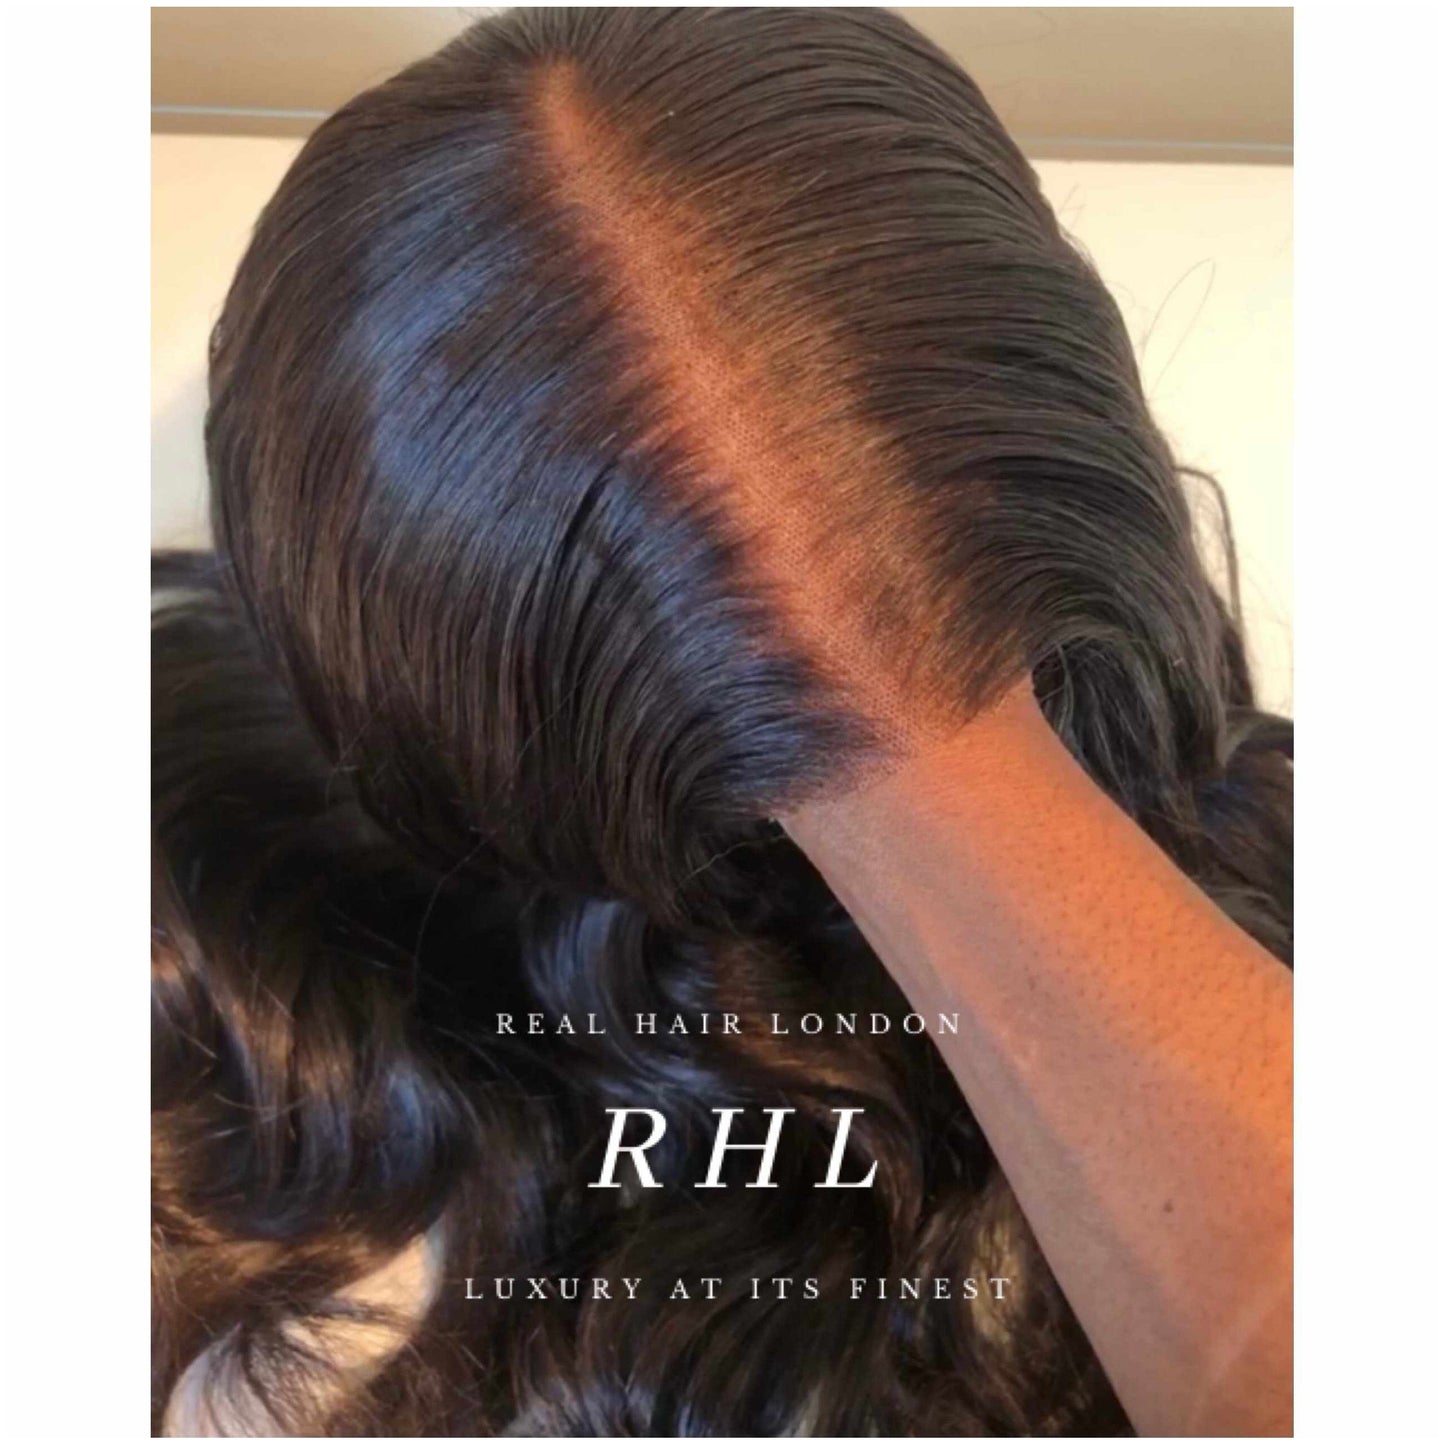 Mariah 5” x 6” Illusion Lace Closure Wig-Real Hair London